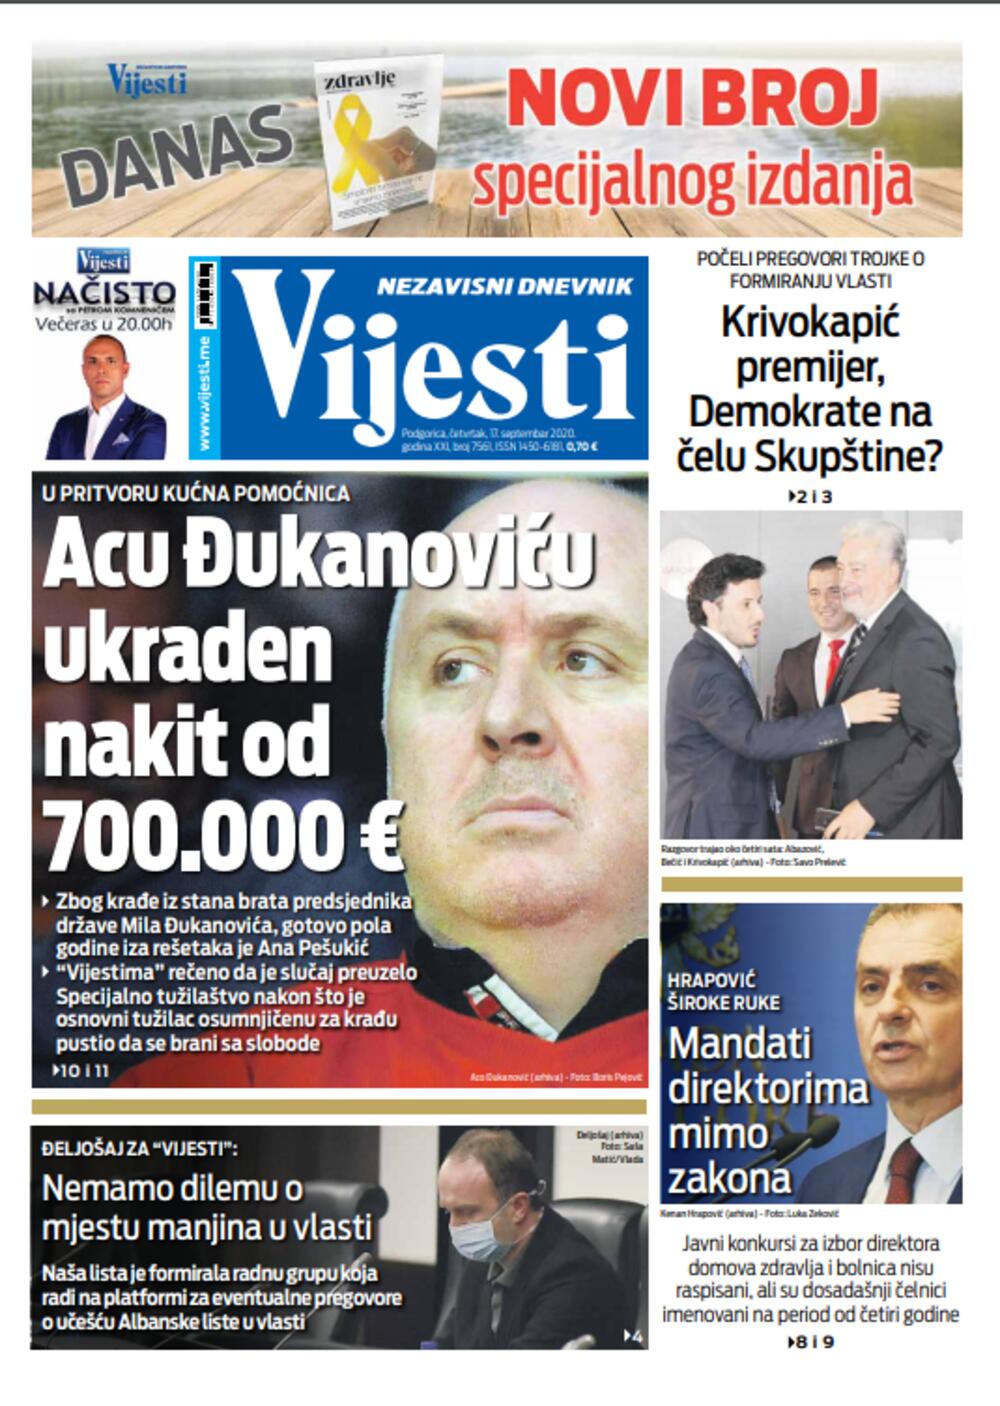 Naslovna strana "Vijesti" za 17. septembar, Foto: Vijesti